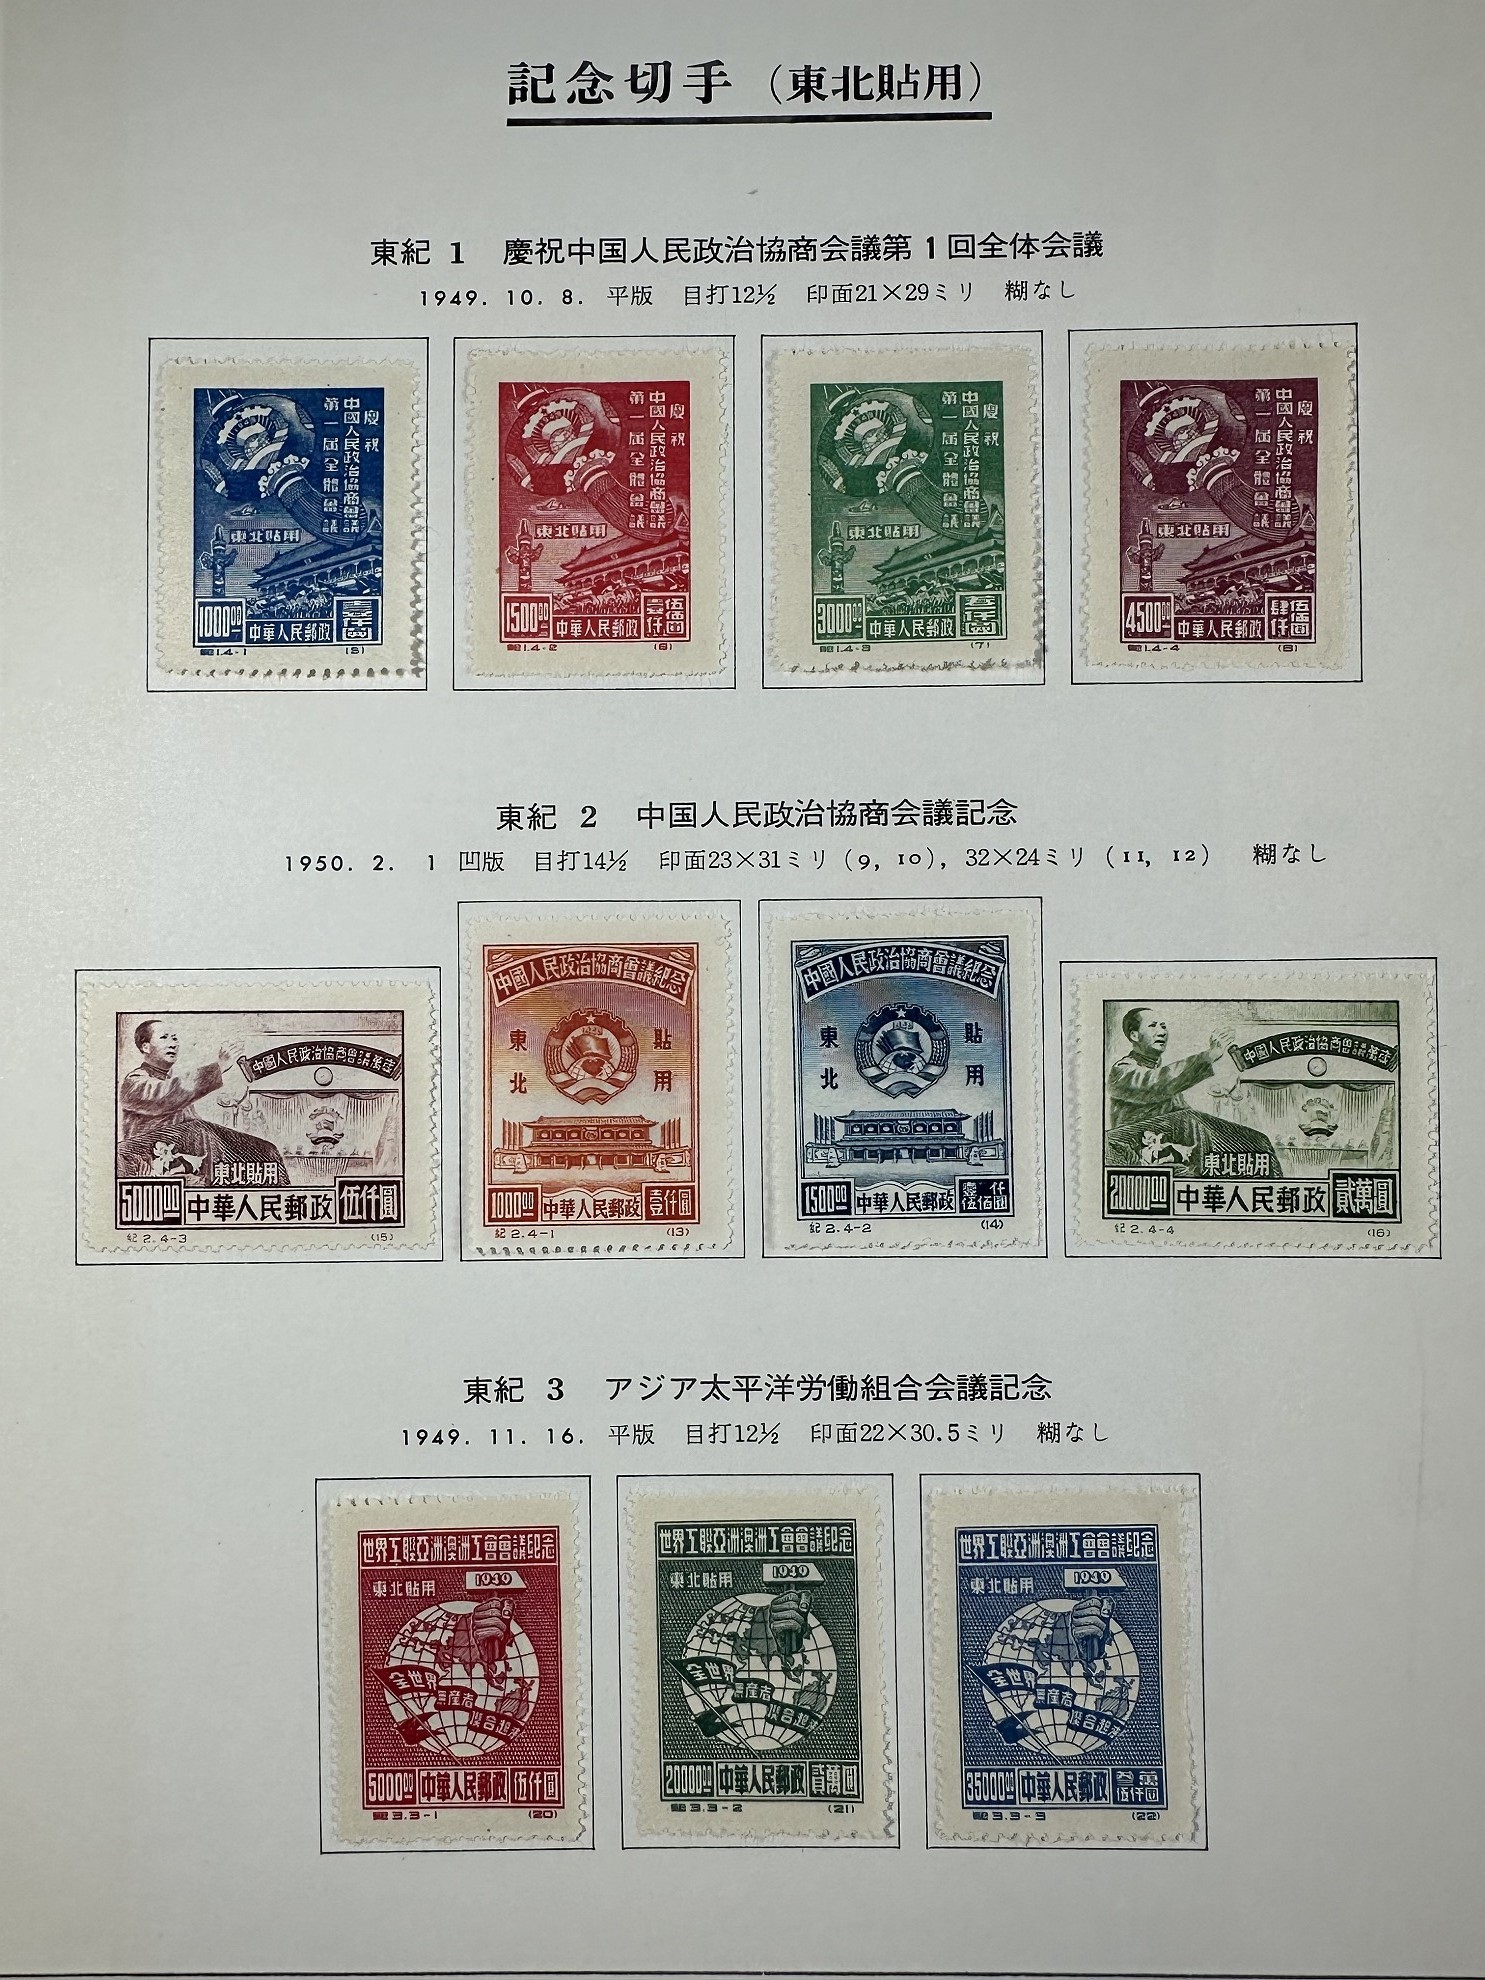 限时竞拍,中国切手記念切手再版東北貼用シリーズ